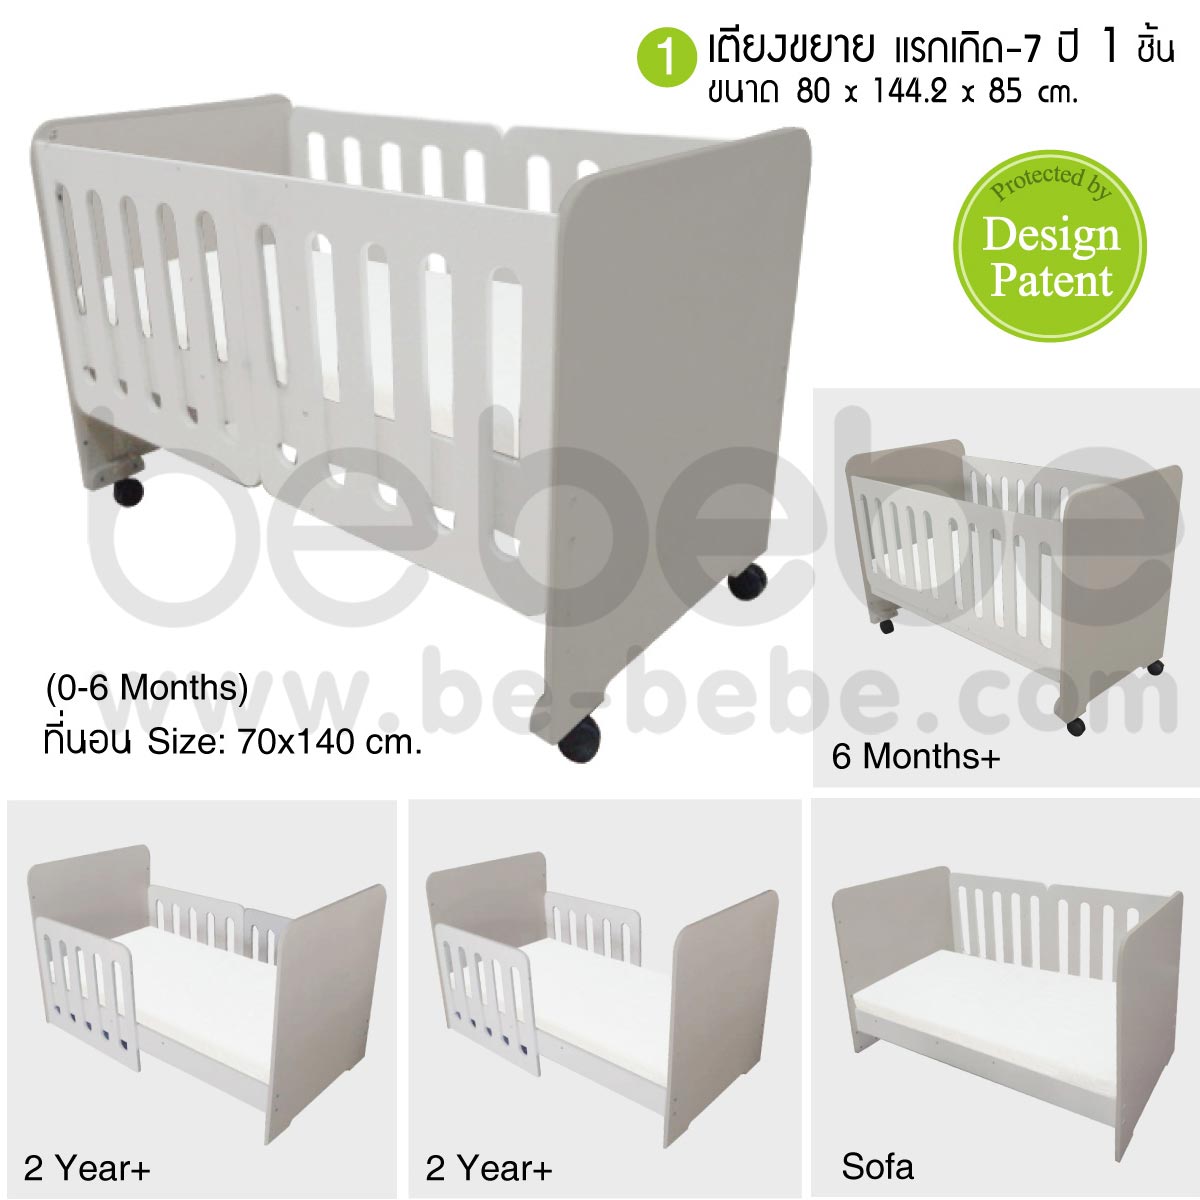 be bebe :ชุดเตียงเด็กแรกเกิด-7ปี (70x140)ปรับเป็นโซฟาได้+ที่นอนฟองน้ำ+ชุดเครื่องนอน /เทา